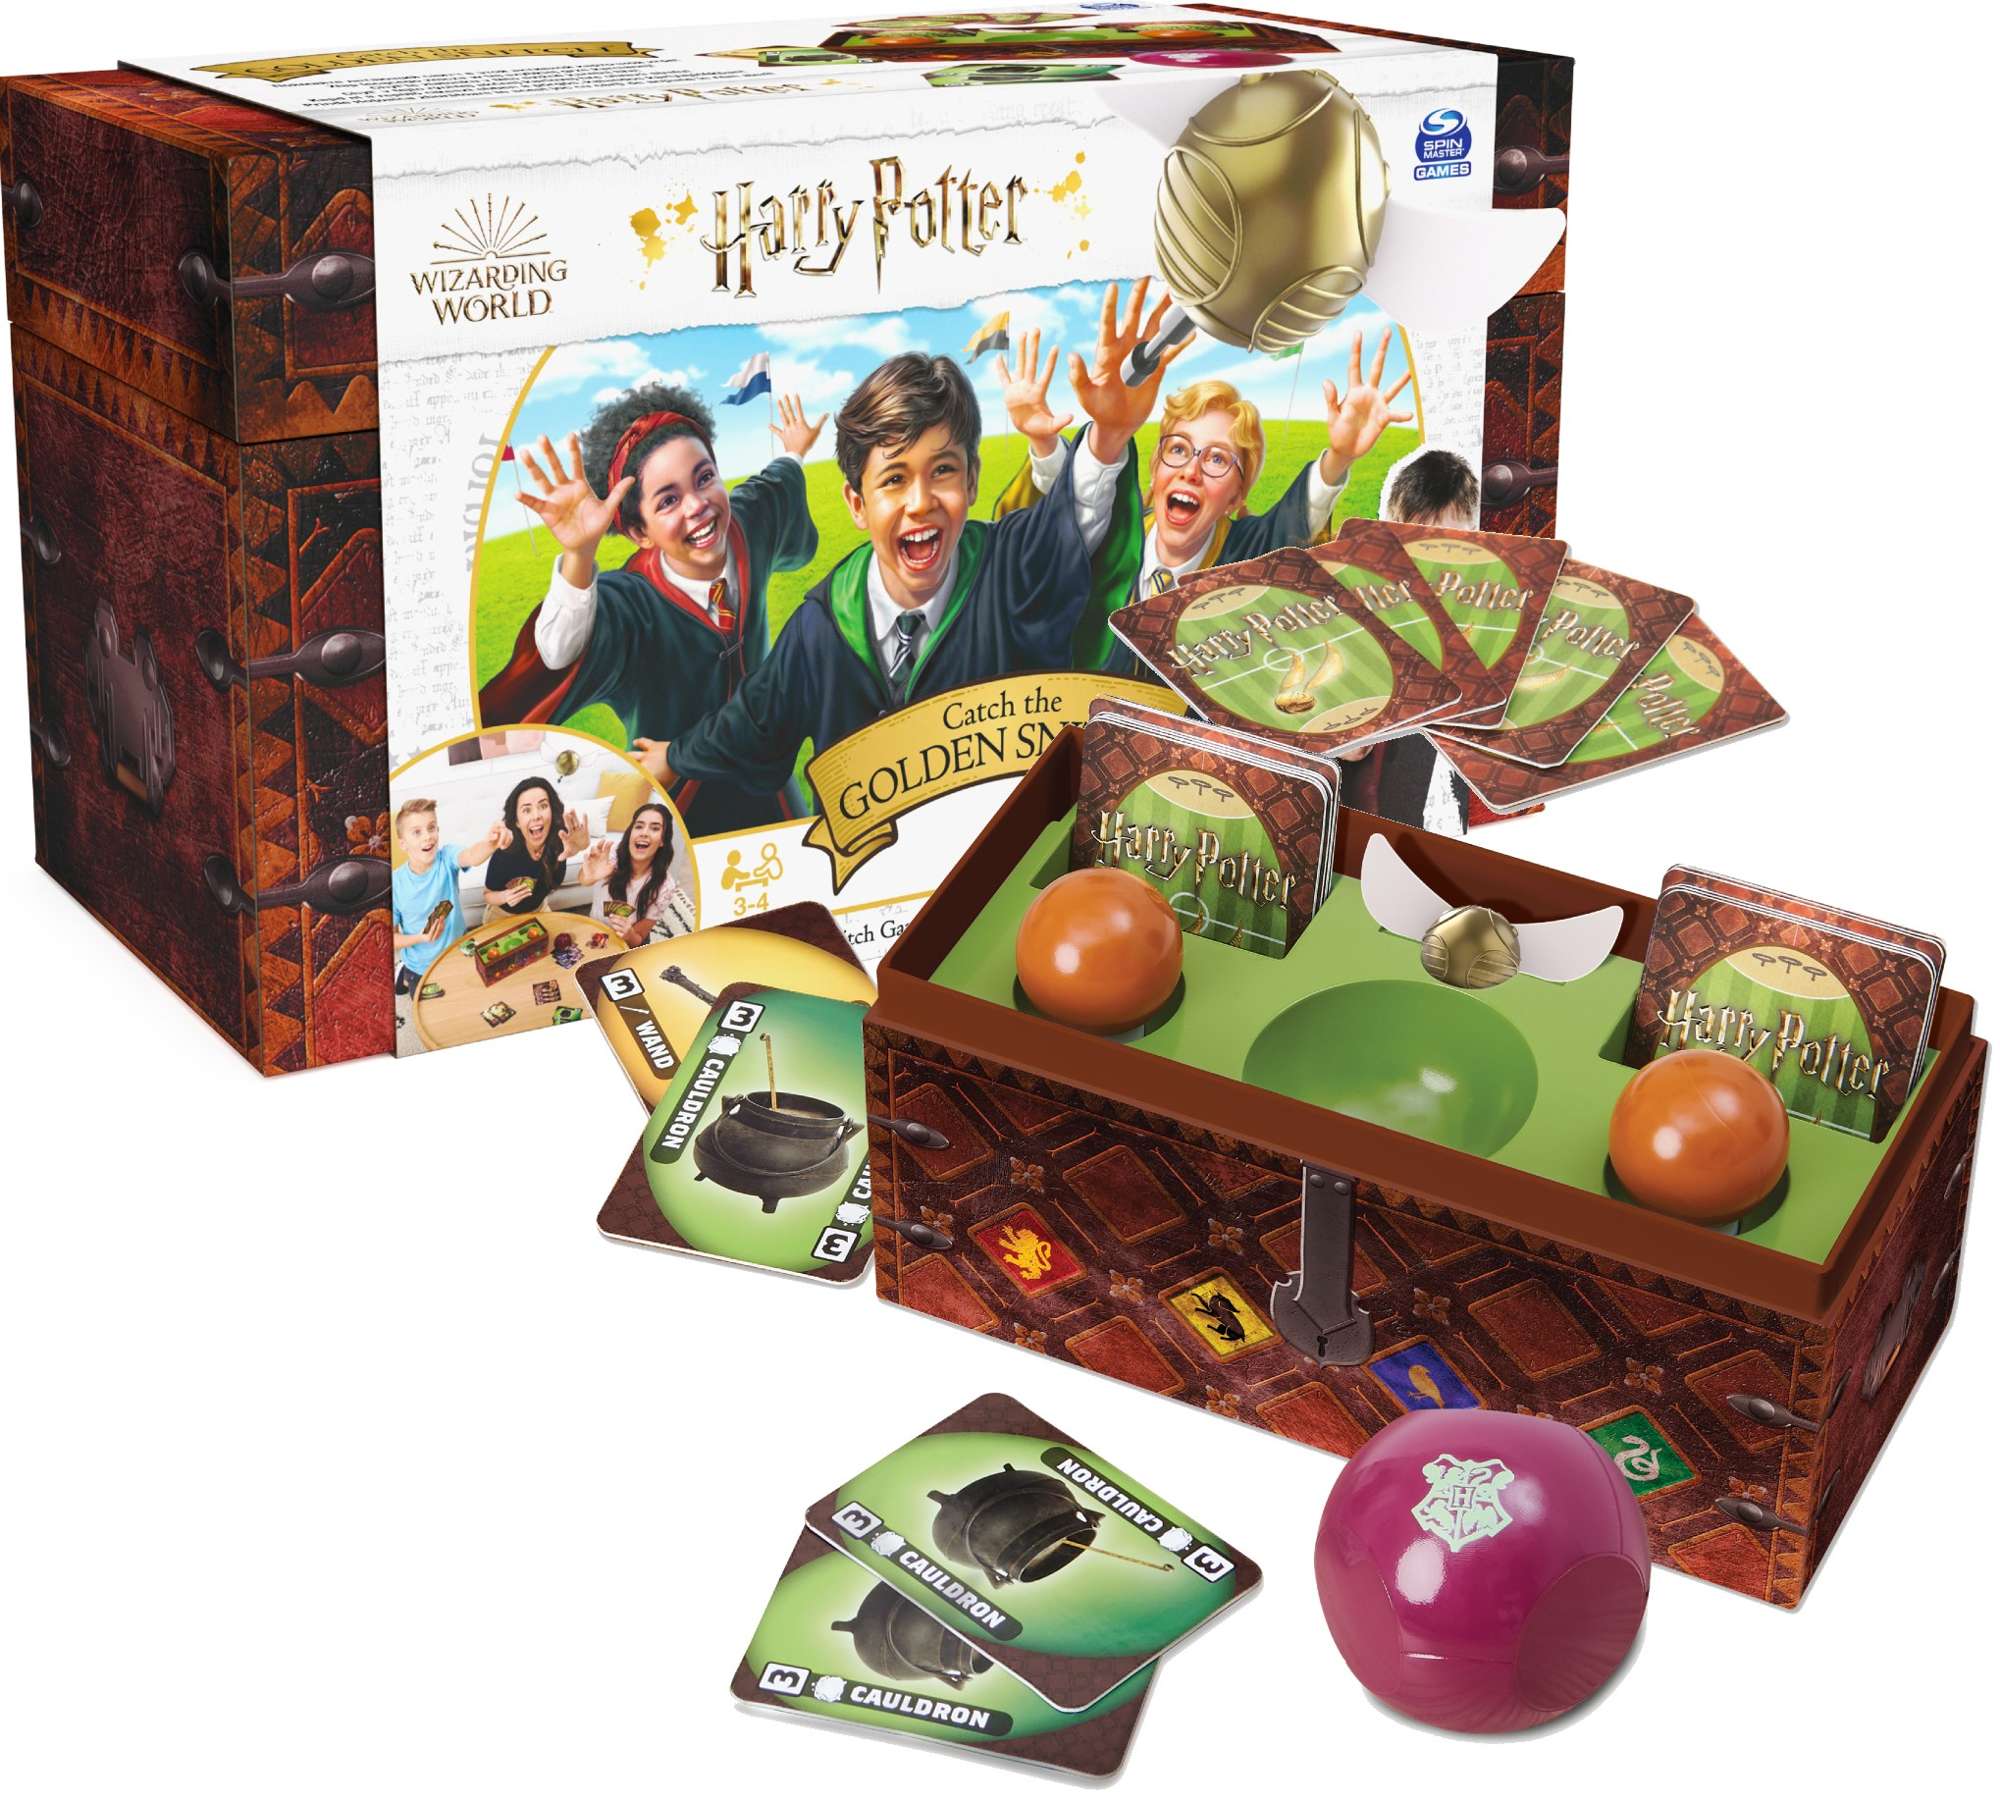 Harry Potter Towarzyska Gra karciana rodzinna wyzwanie Zap Zoty Znicz Spin Master